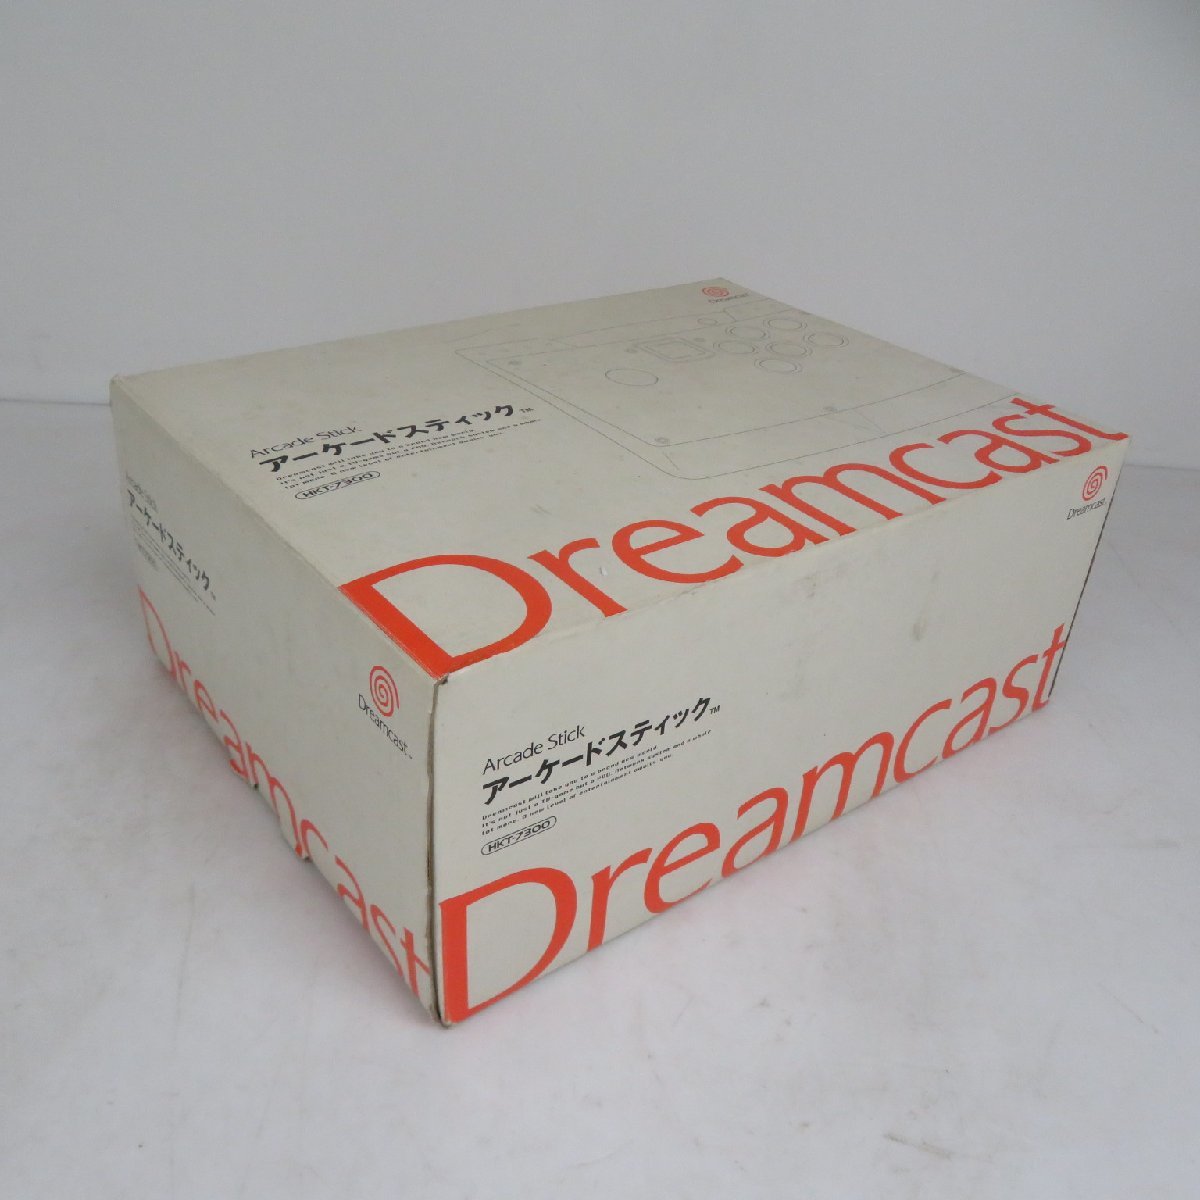 【新品未使用】 DC ドリームキャスト アーケードスティック HKT-7300 Dreamcast ドリキャス アーケードコントローラー / 100 (KSF014271)_画像2